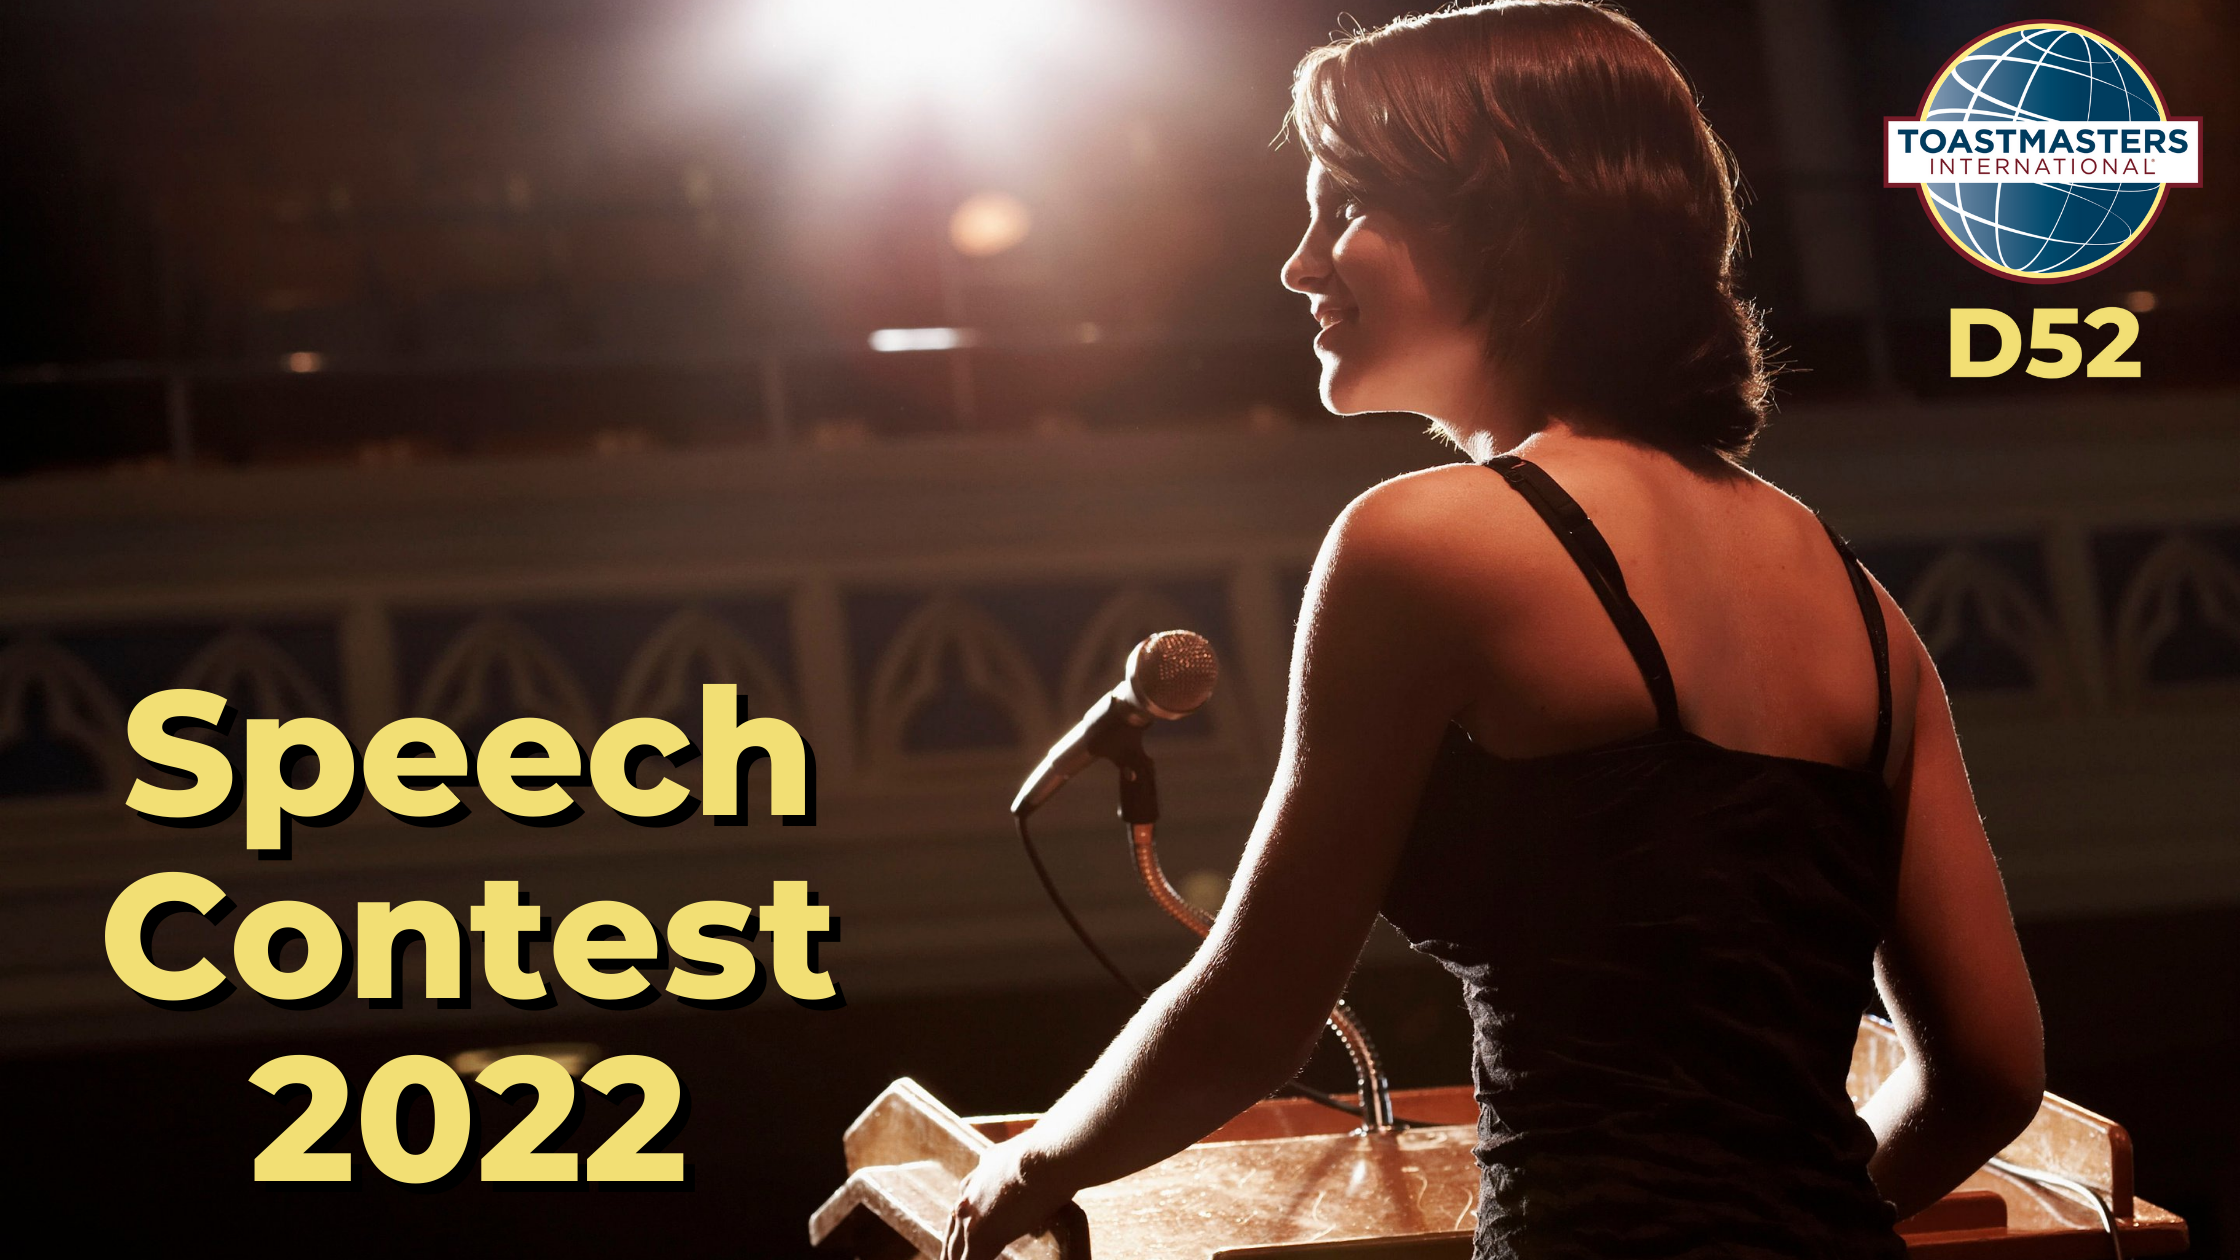 Woman giving a speech and Speech Contest 2022